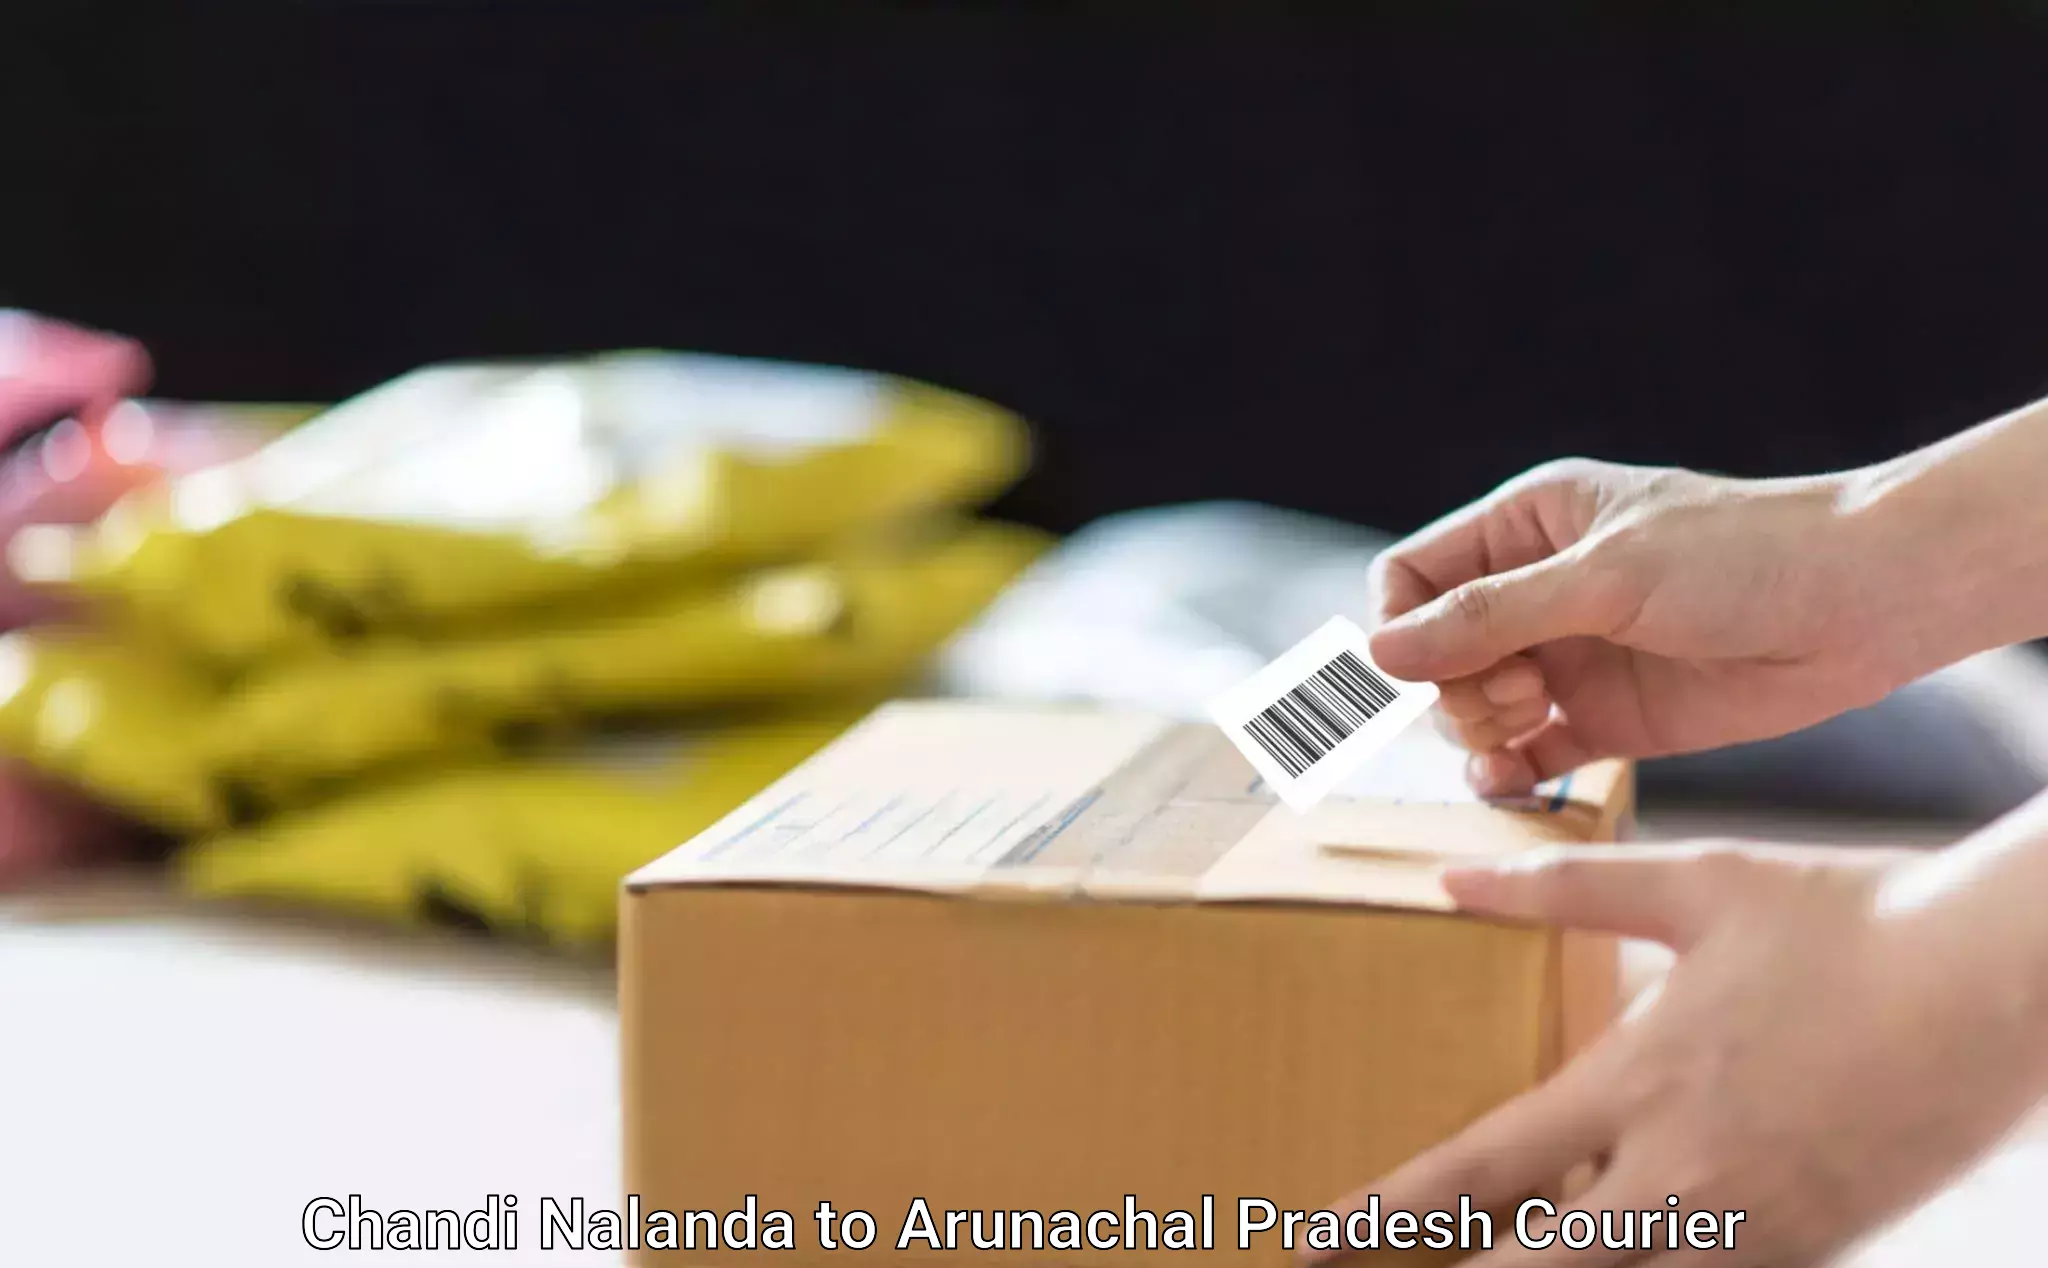 Professional home goods transport Chandi Nalanda to Arunachal Pradesh